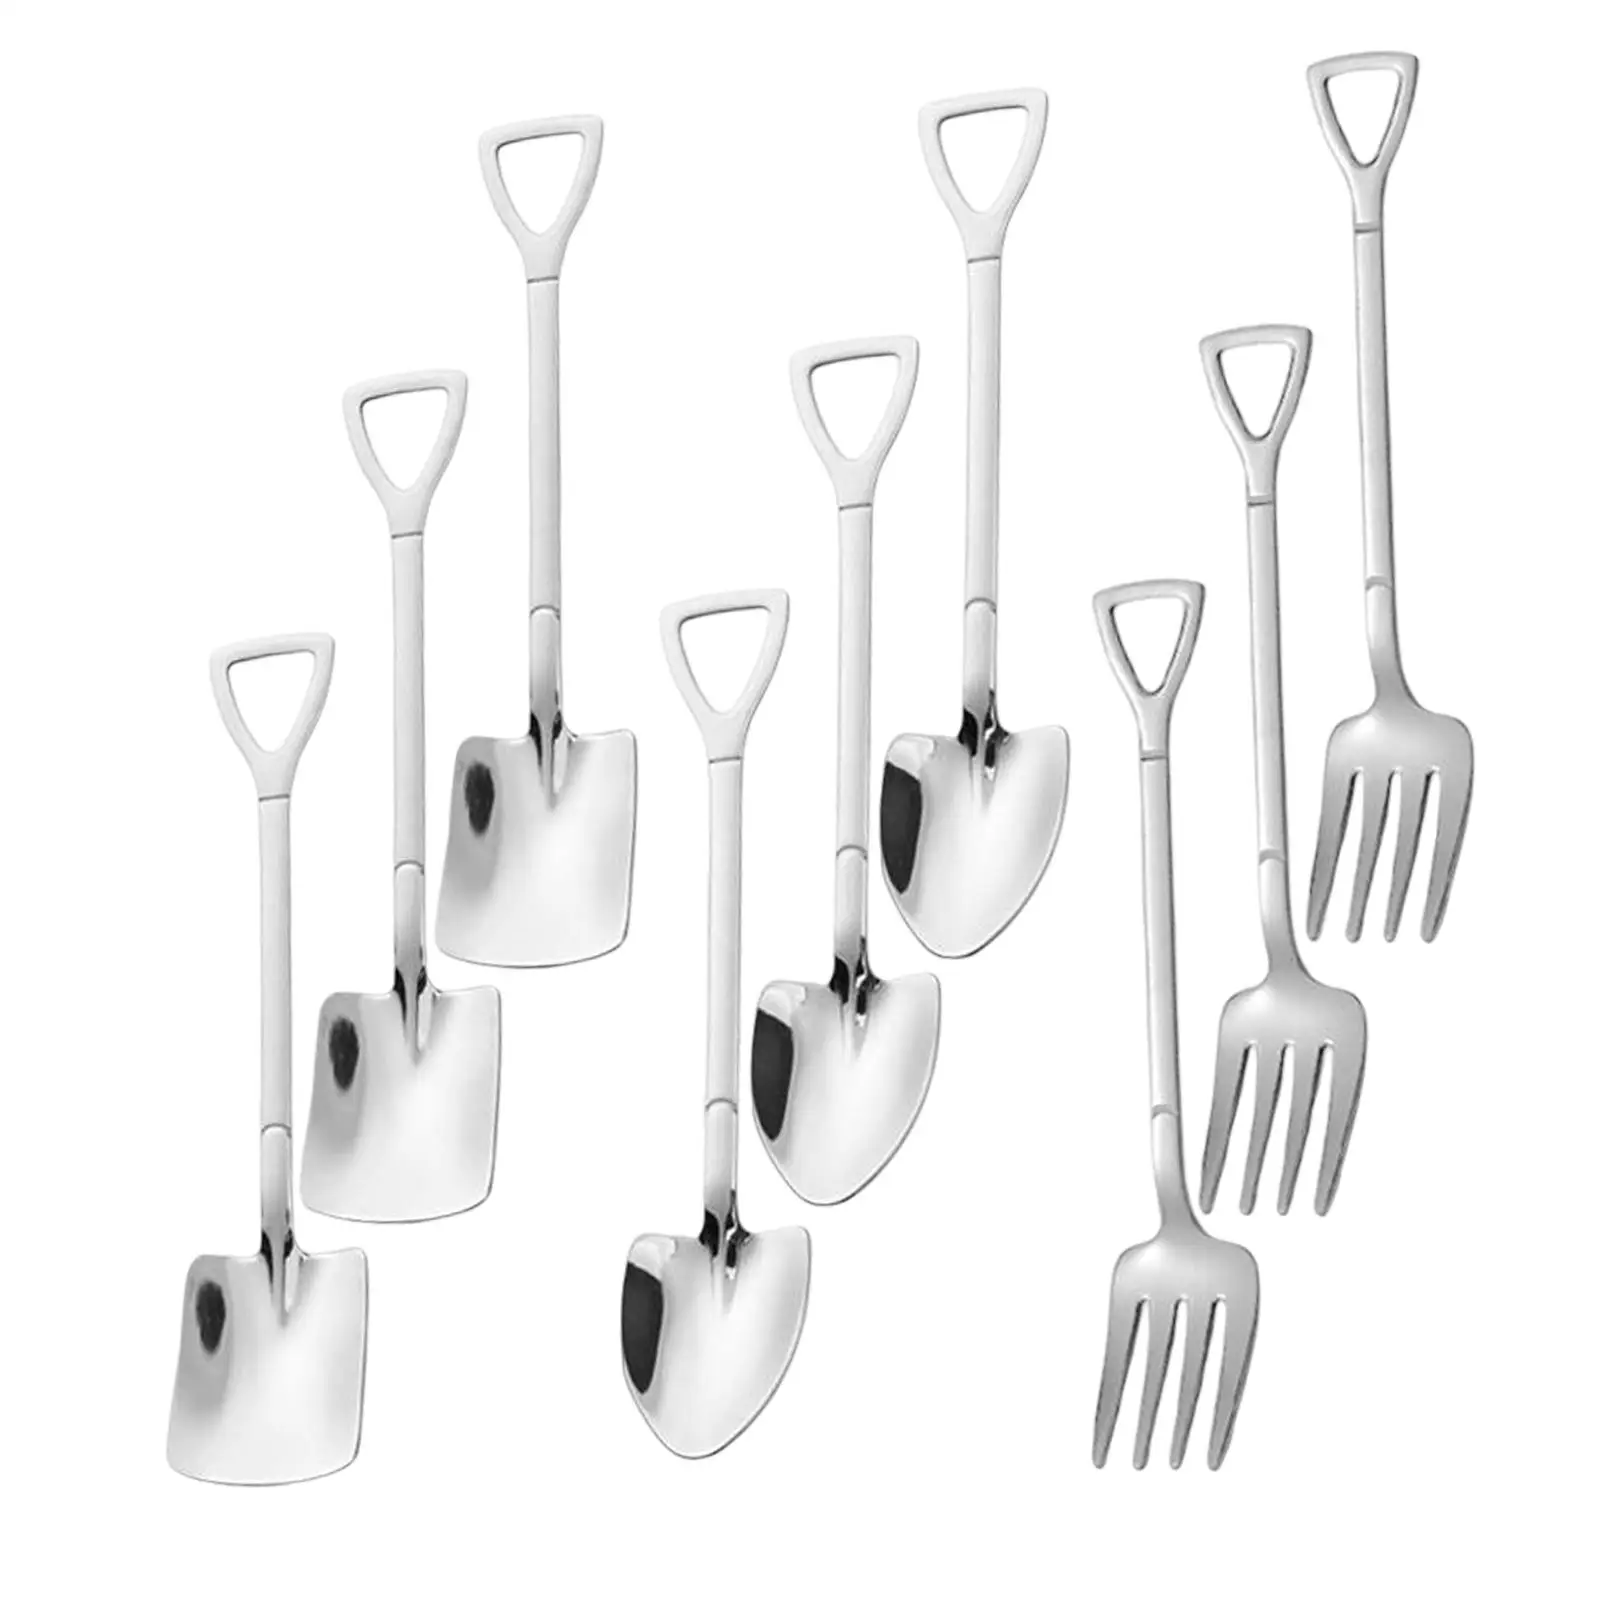 9x Cutlery Set Utensils Set Tableware Cutlery Spoons Tableware for Wedding